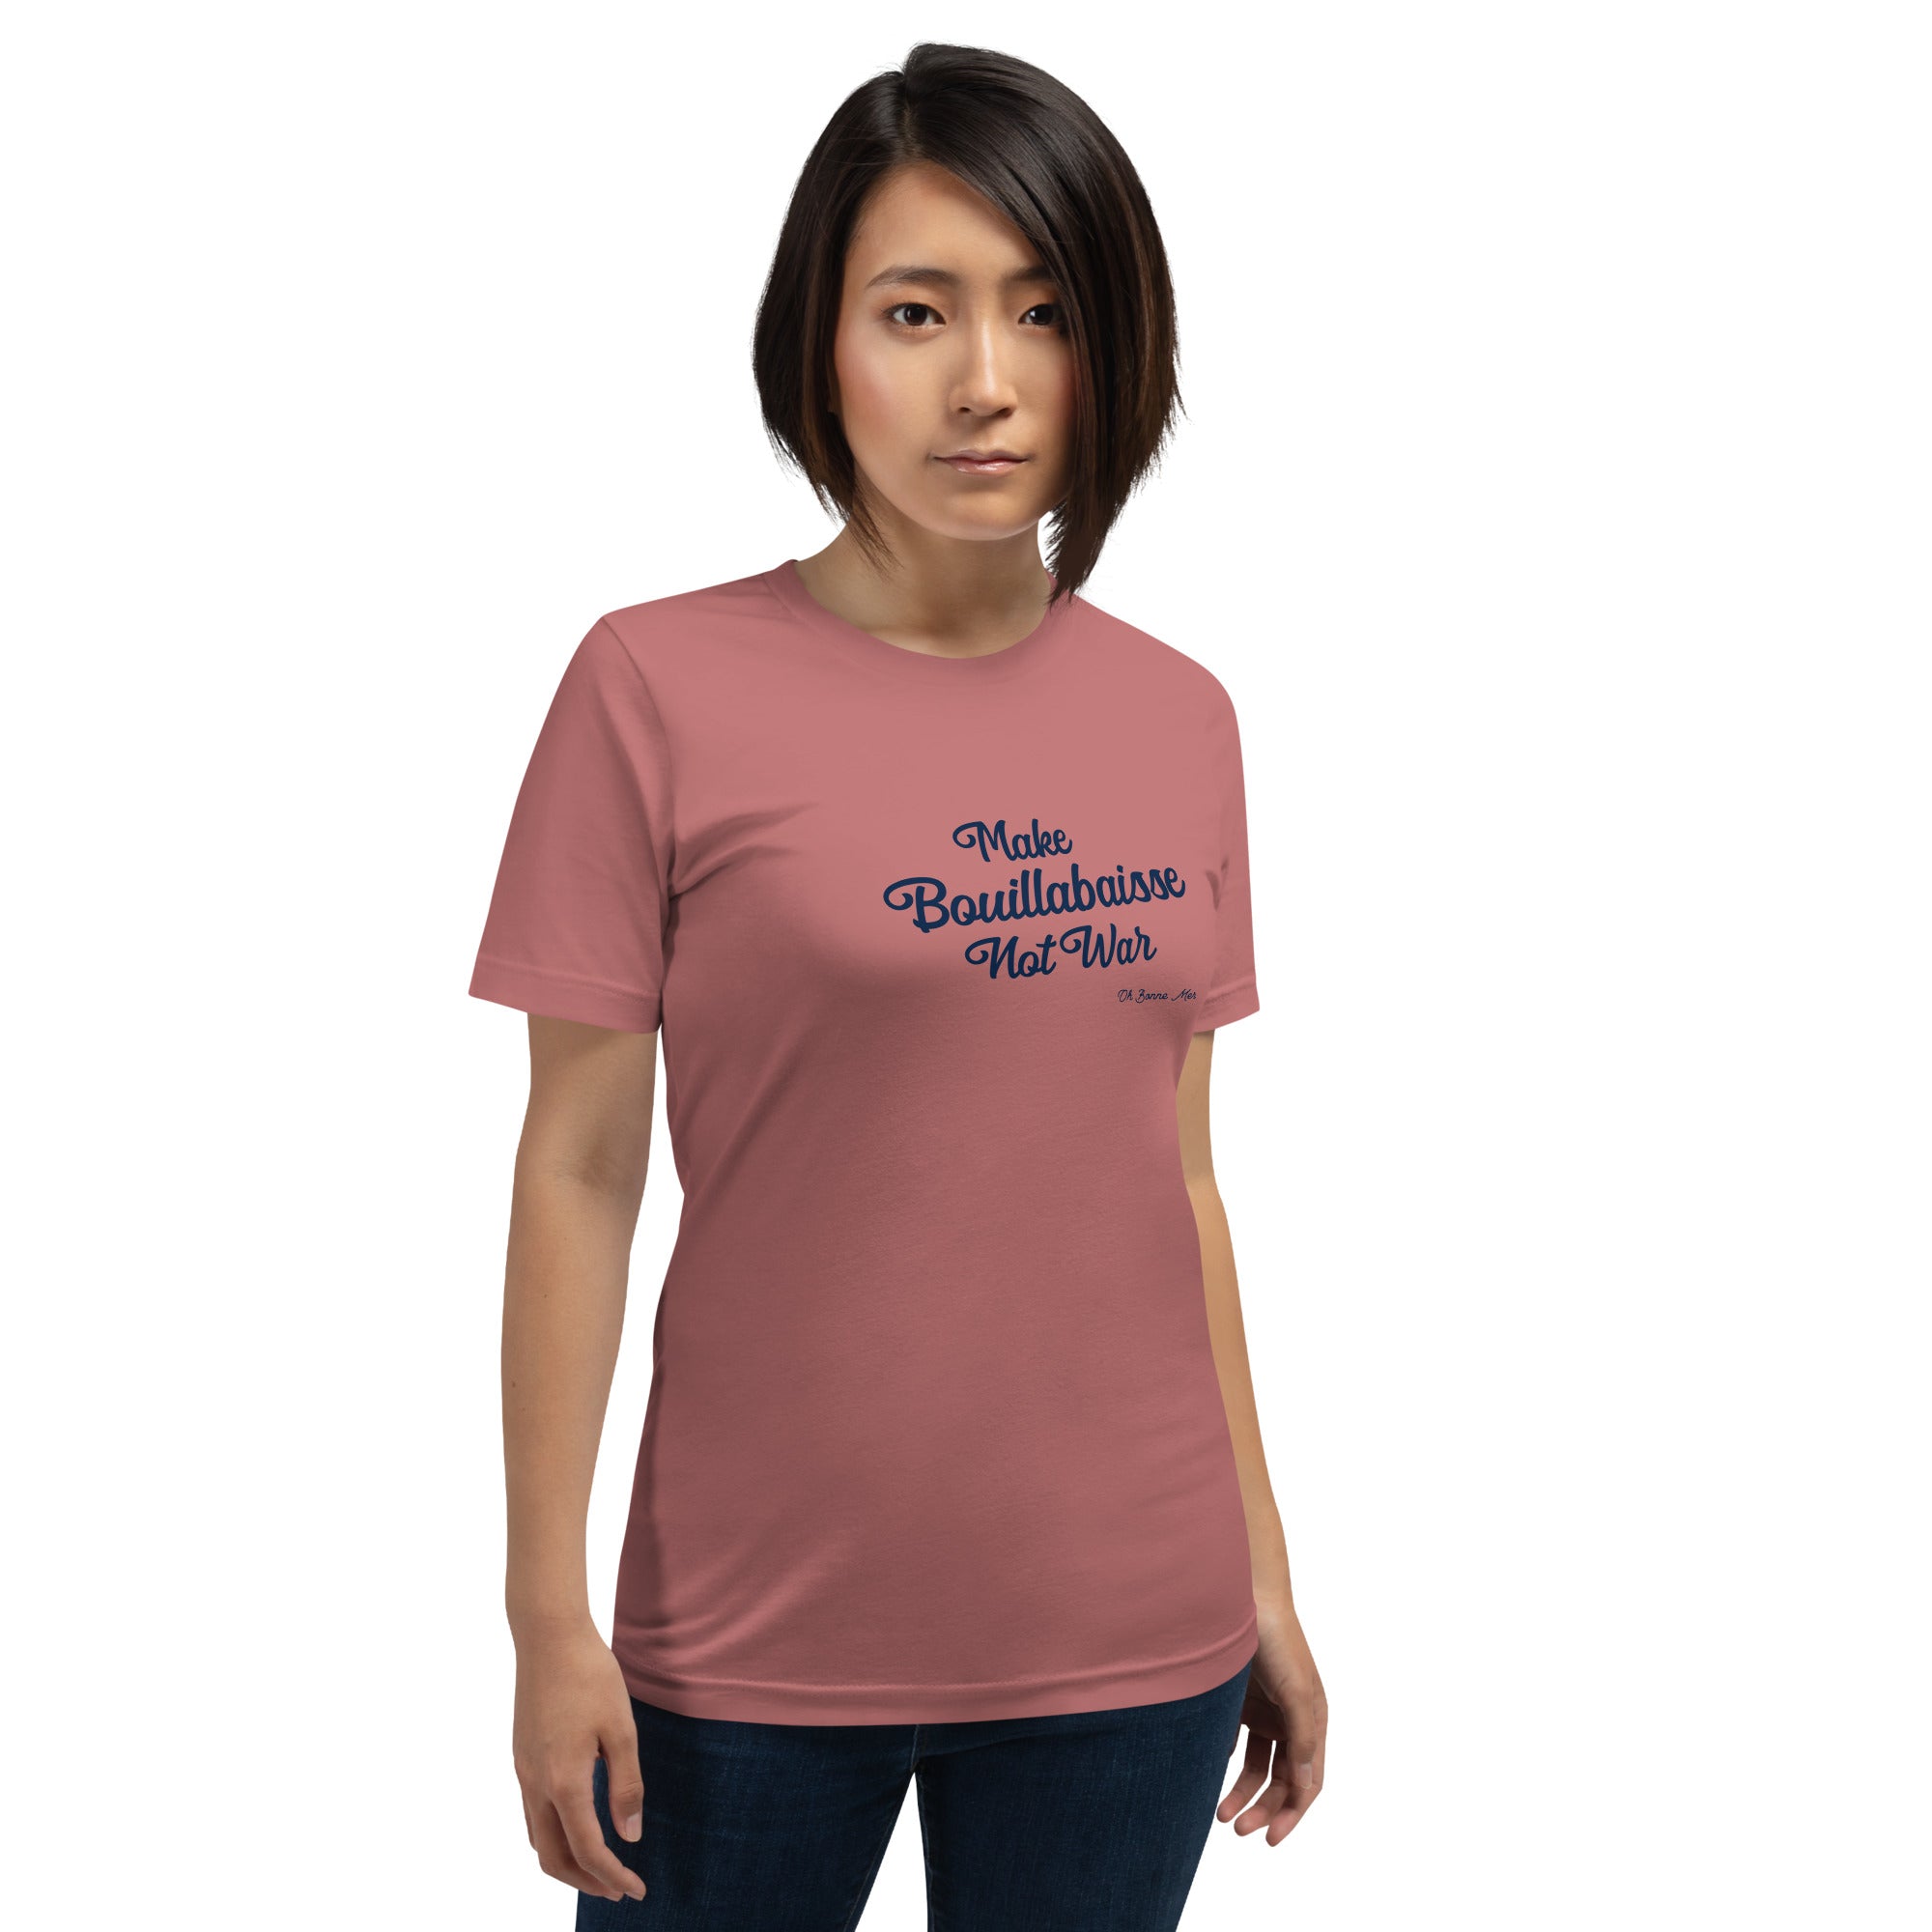 T-shirt en coton unisexe Make Bouillabaisse Not War Text Only Navy sur couleurs vives